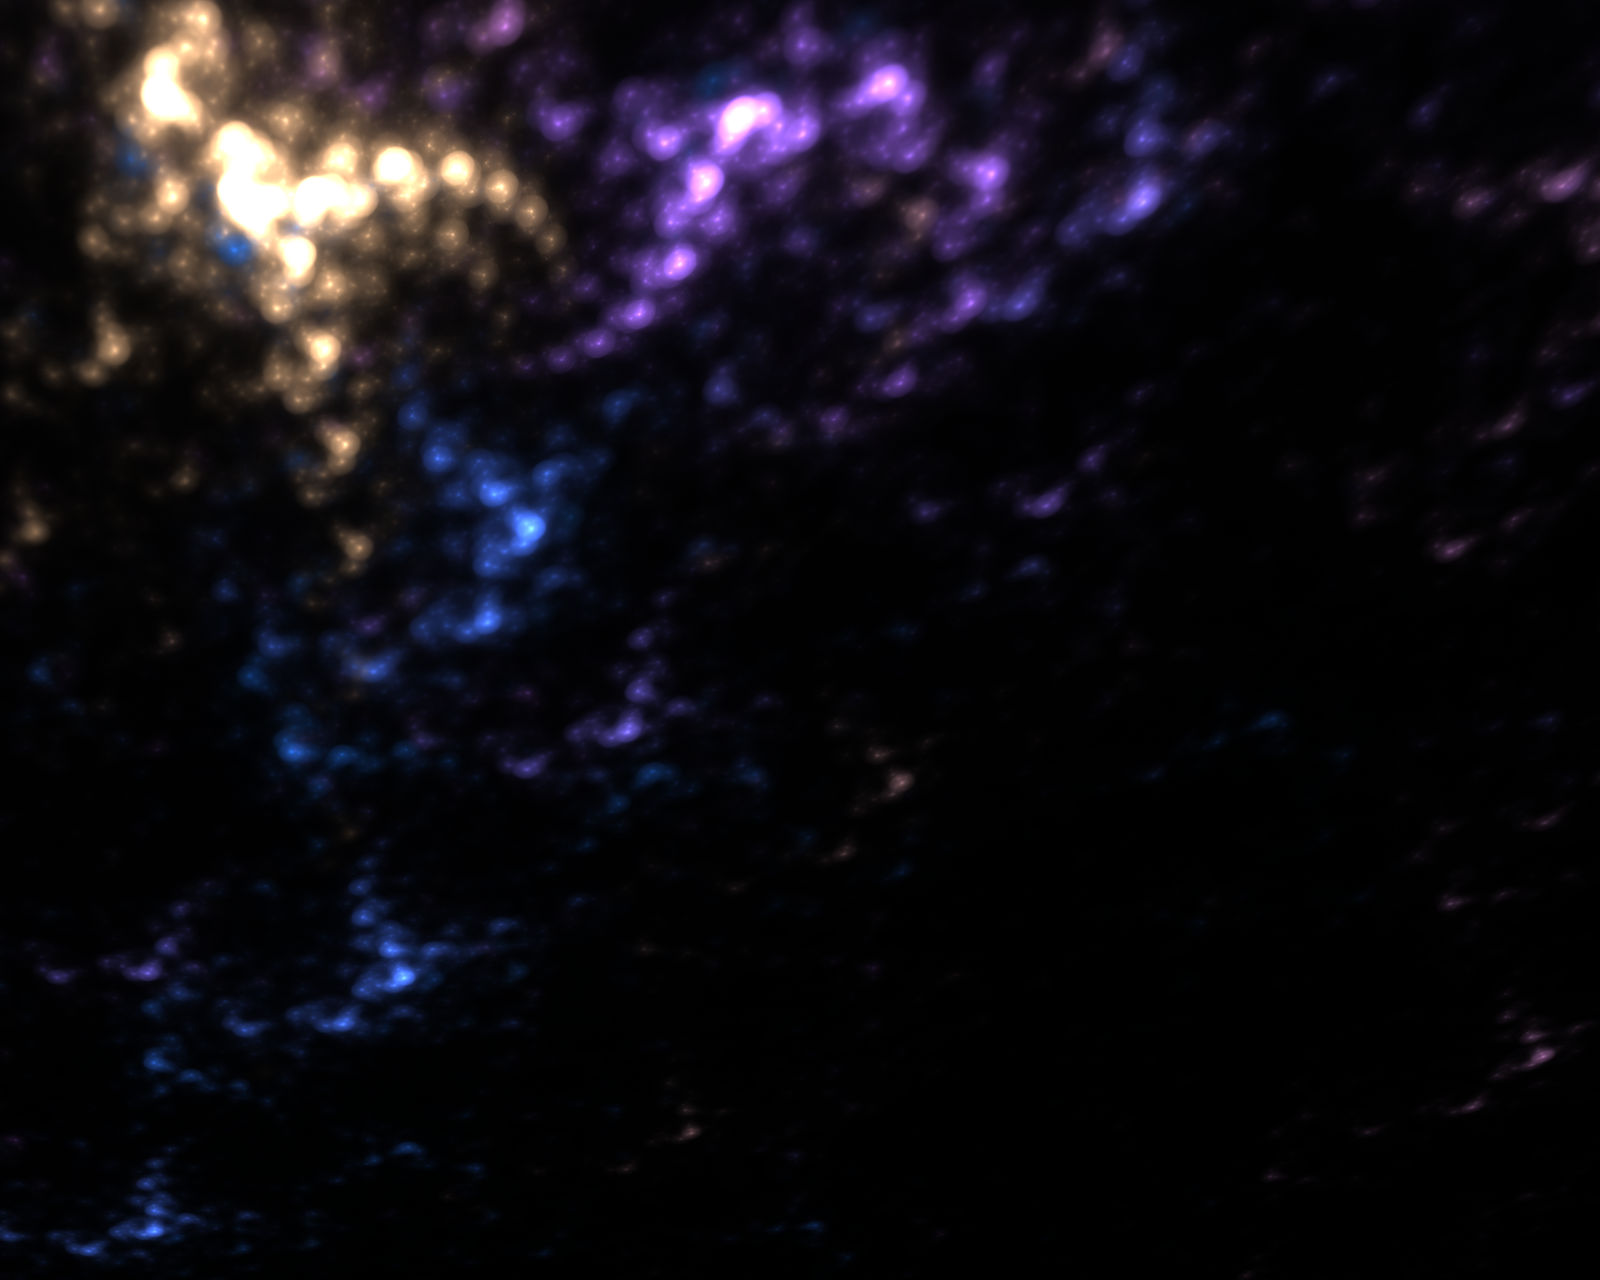 Stock Image: Nebula Background